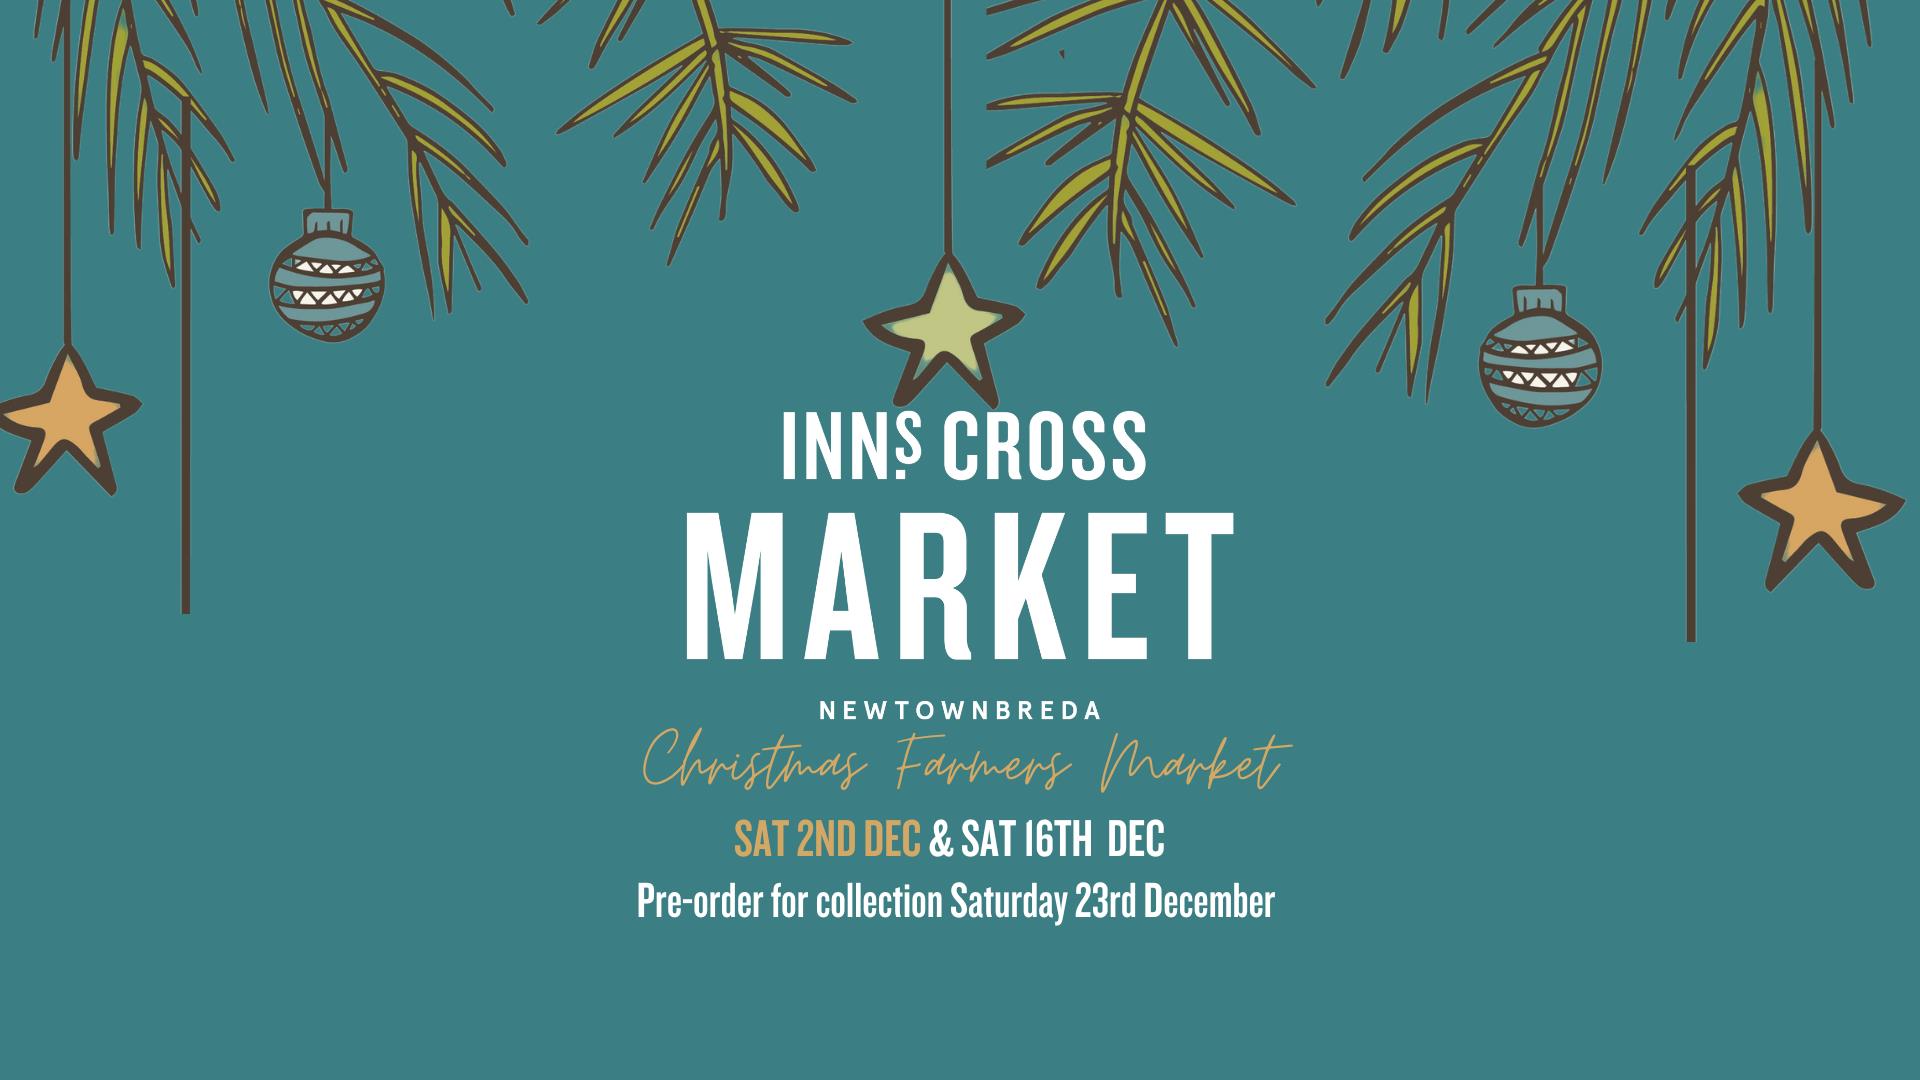 Inns Cross market